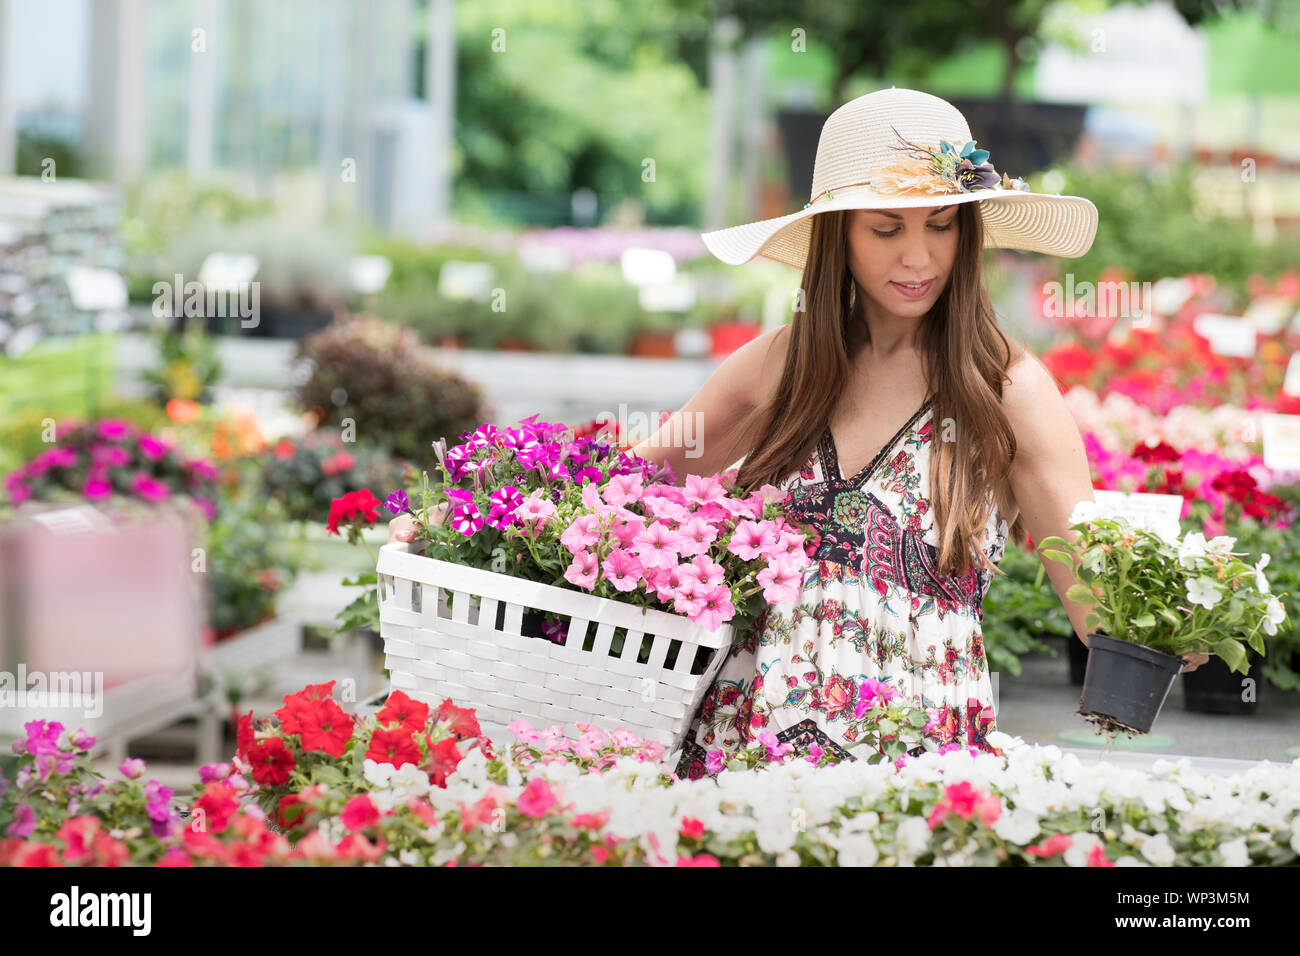 Glücklich lächelnde Frau in breitrandigen Hut und Buntes Kleid mit weißen Blume Warenkorb beim Stehen in der Nähe von Pflanzmaschinen mit Blumen gefüllt Stockfoto